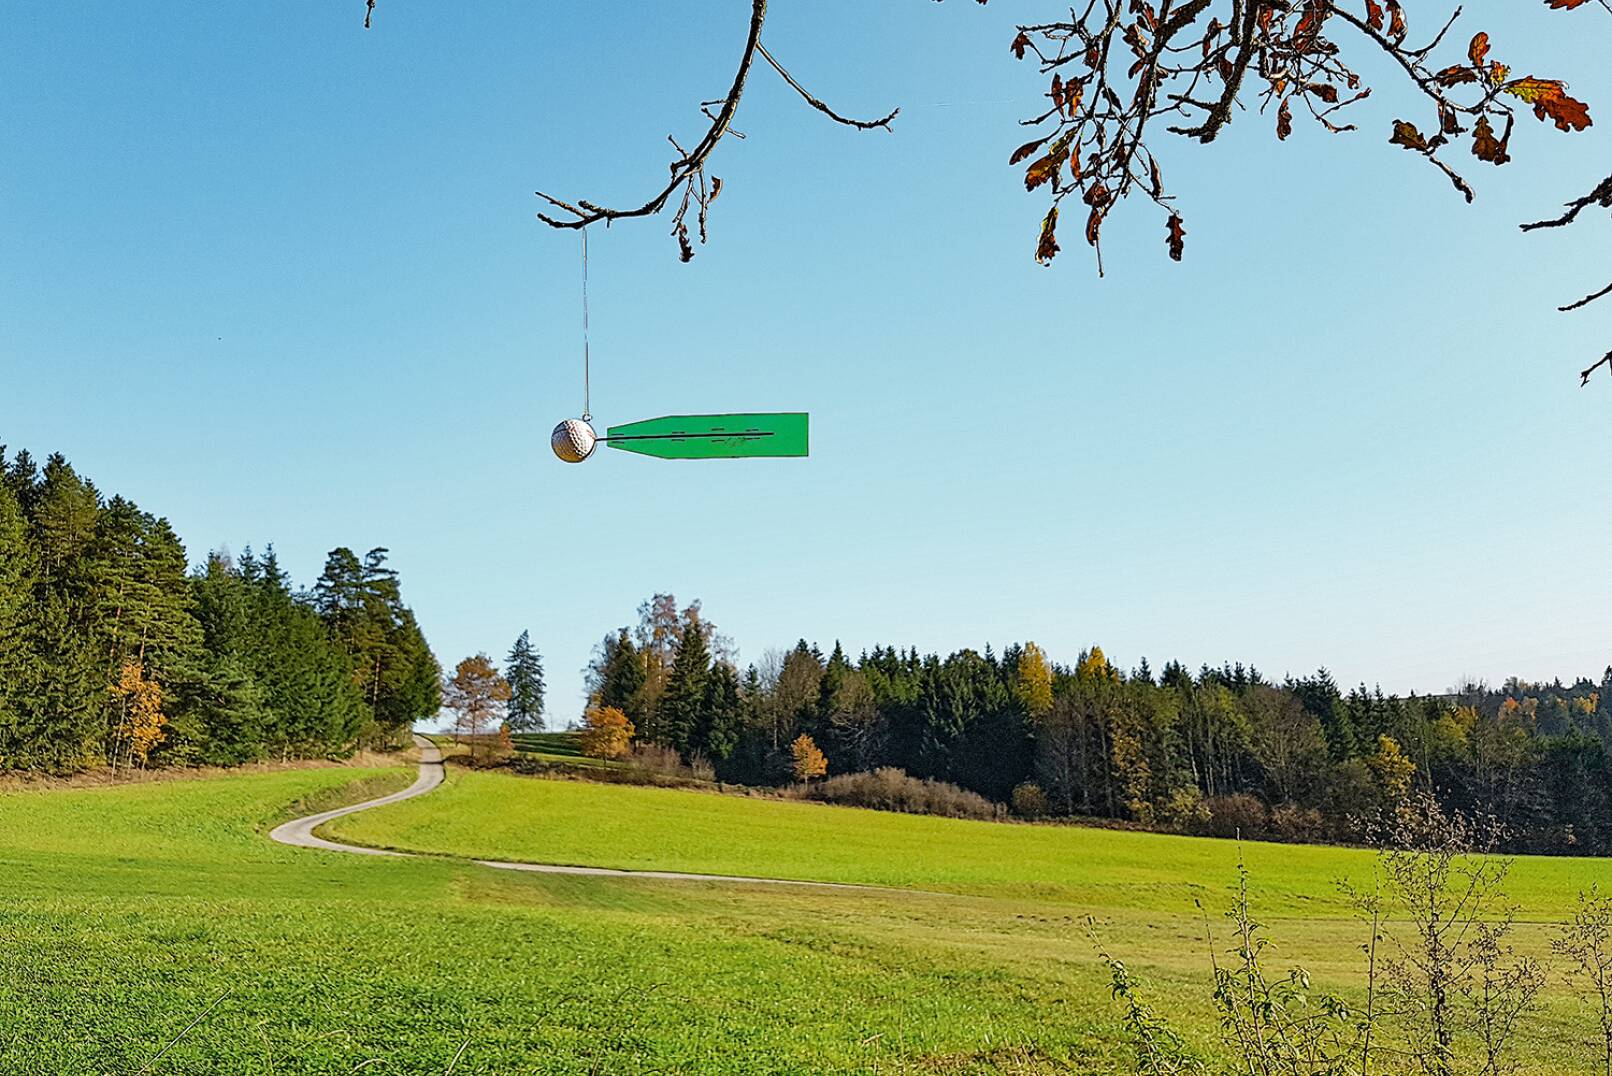 Golfball mit Feder für Windbestimmung - Auch mithilfe eines Golfballs, an dem eine Feder montiert ist, kann die Windrichtung eruiert werden. - © Dominik Steinhauser